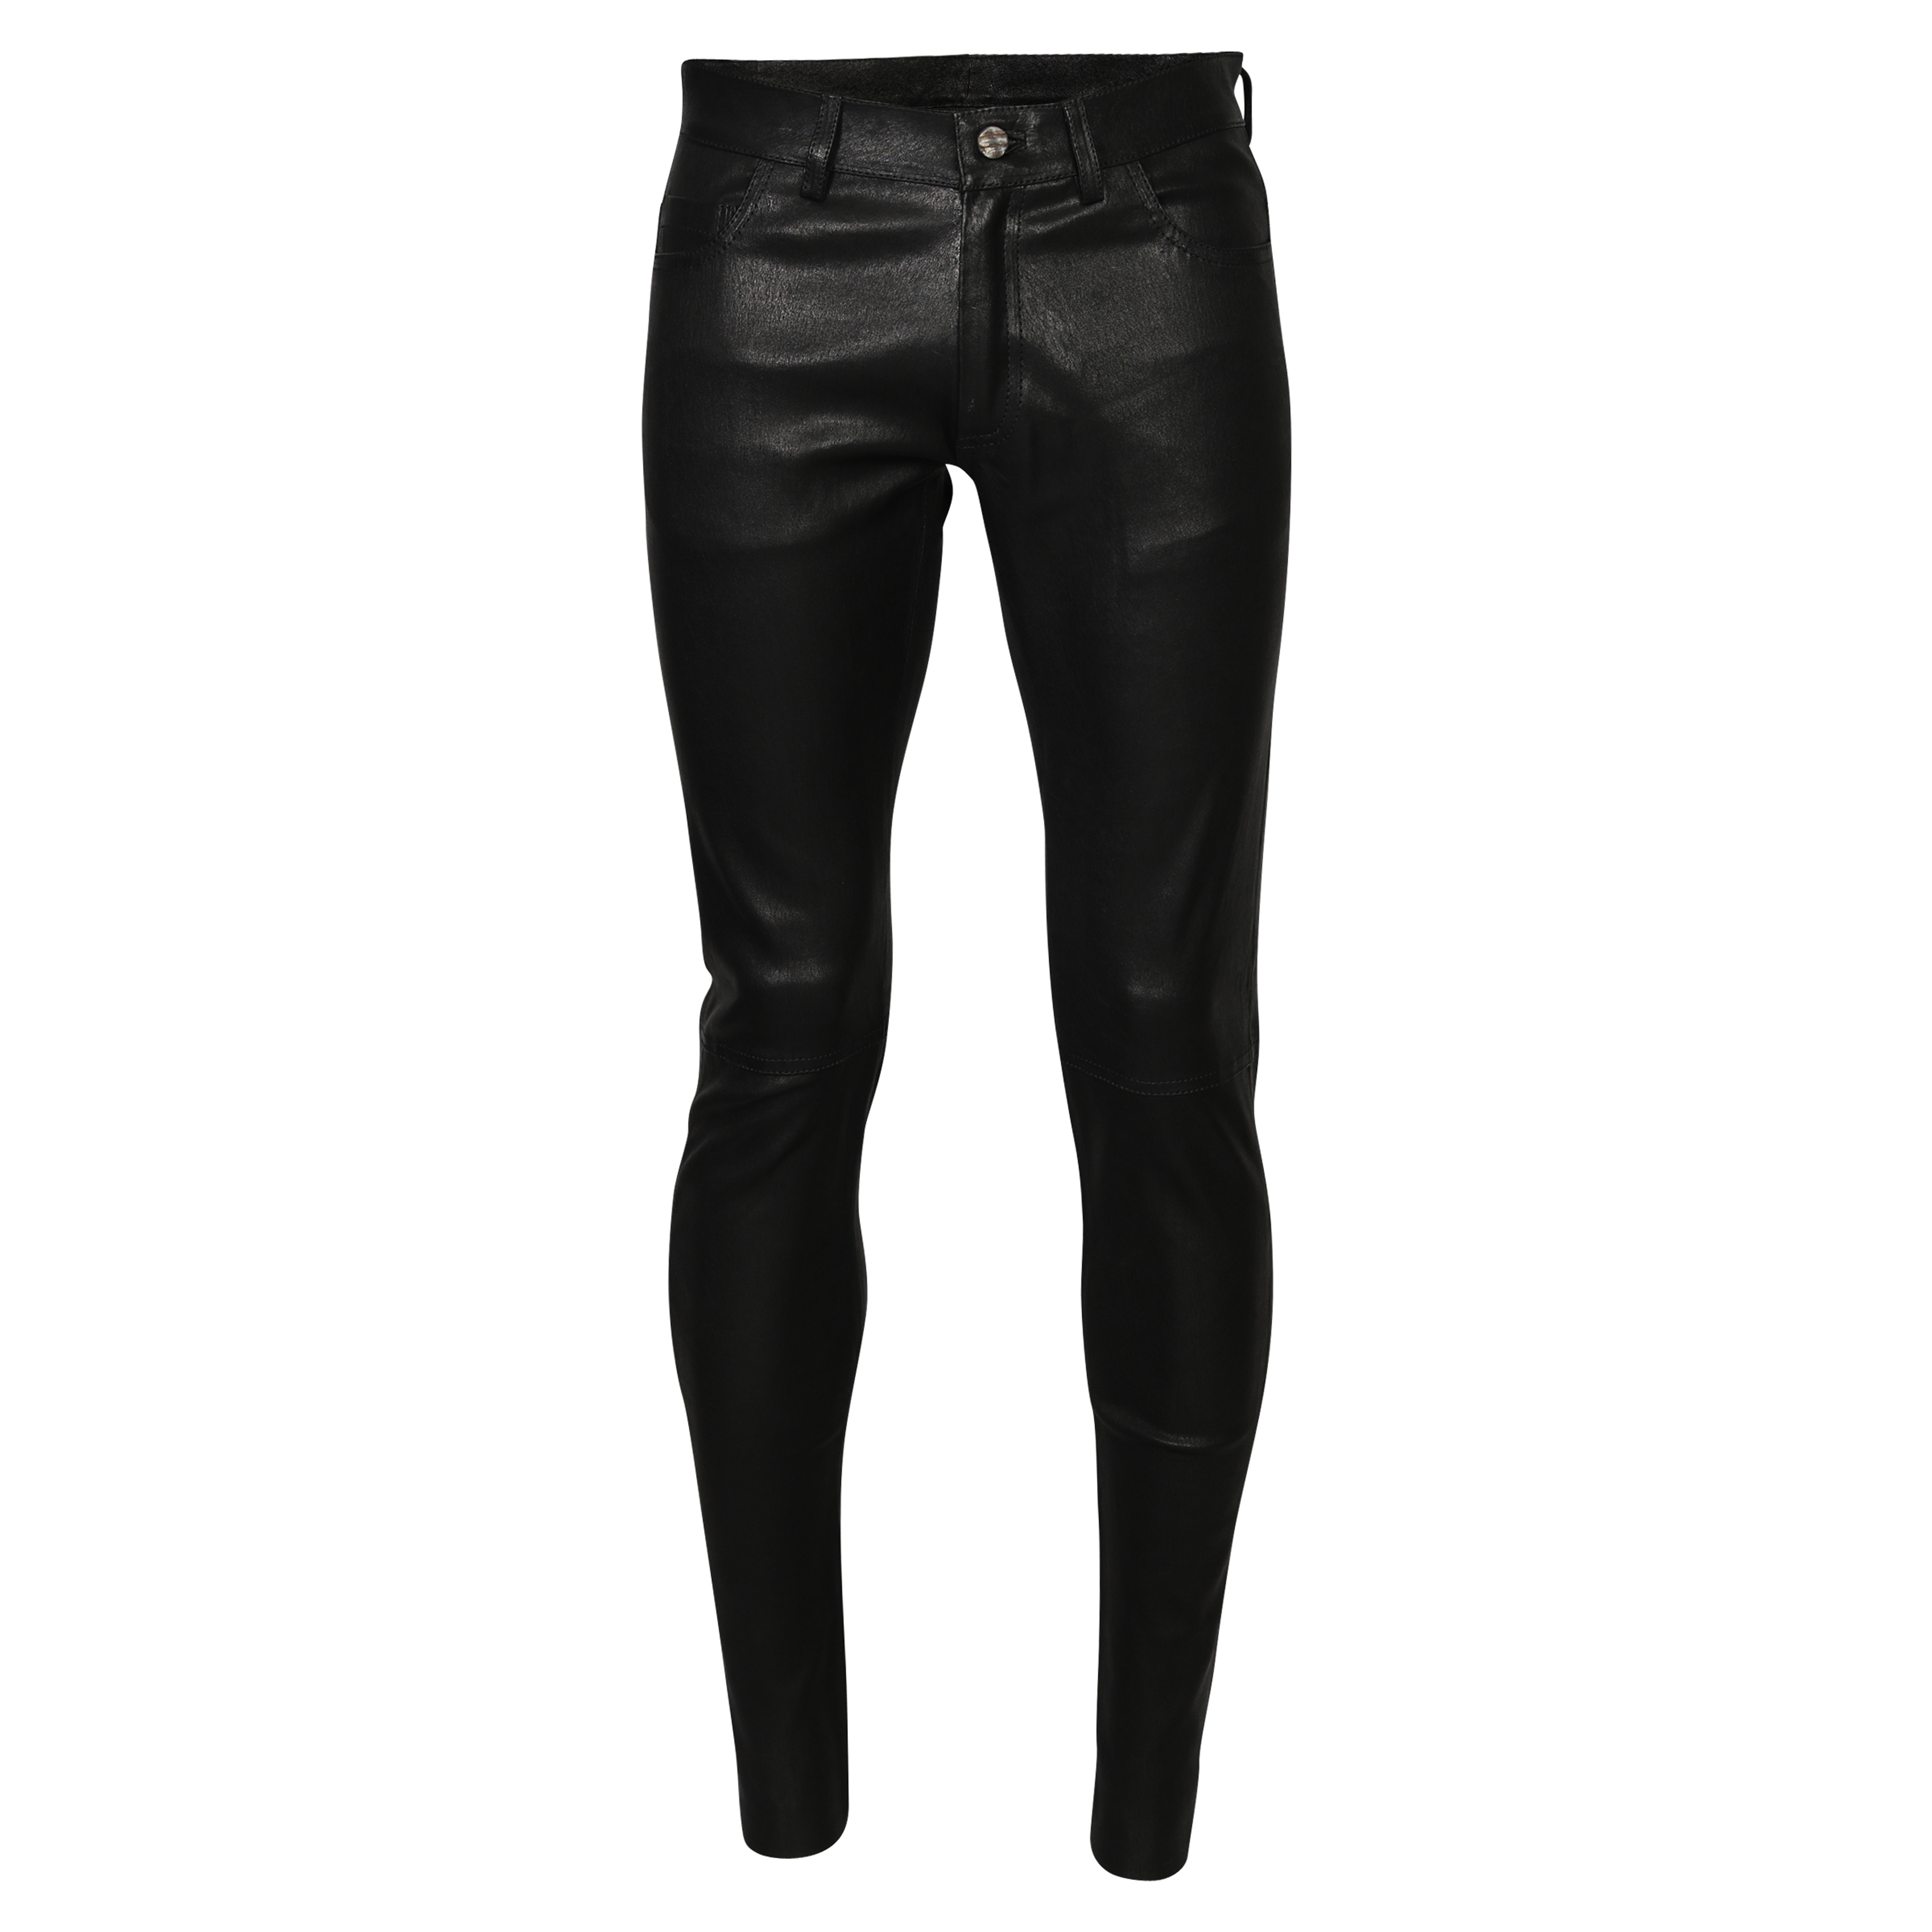 Giorgio Brato Leather Pant in Black